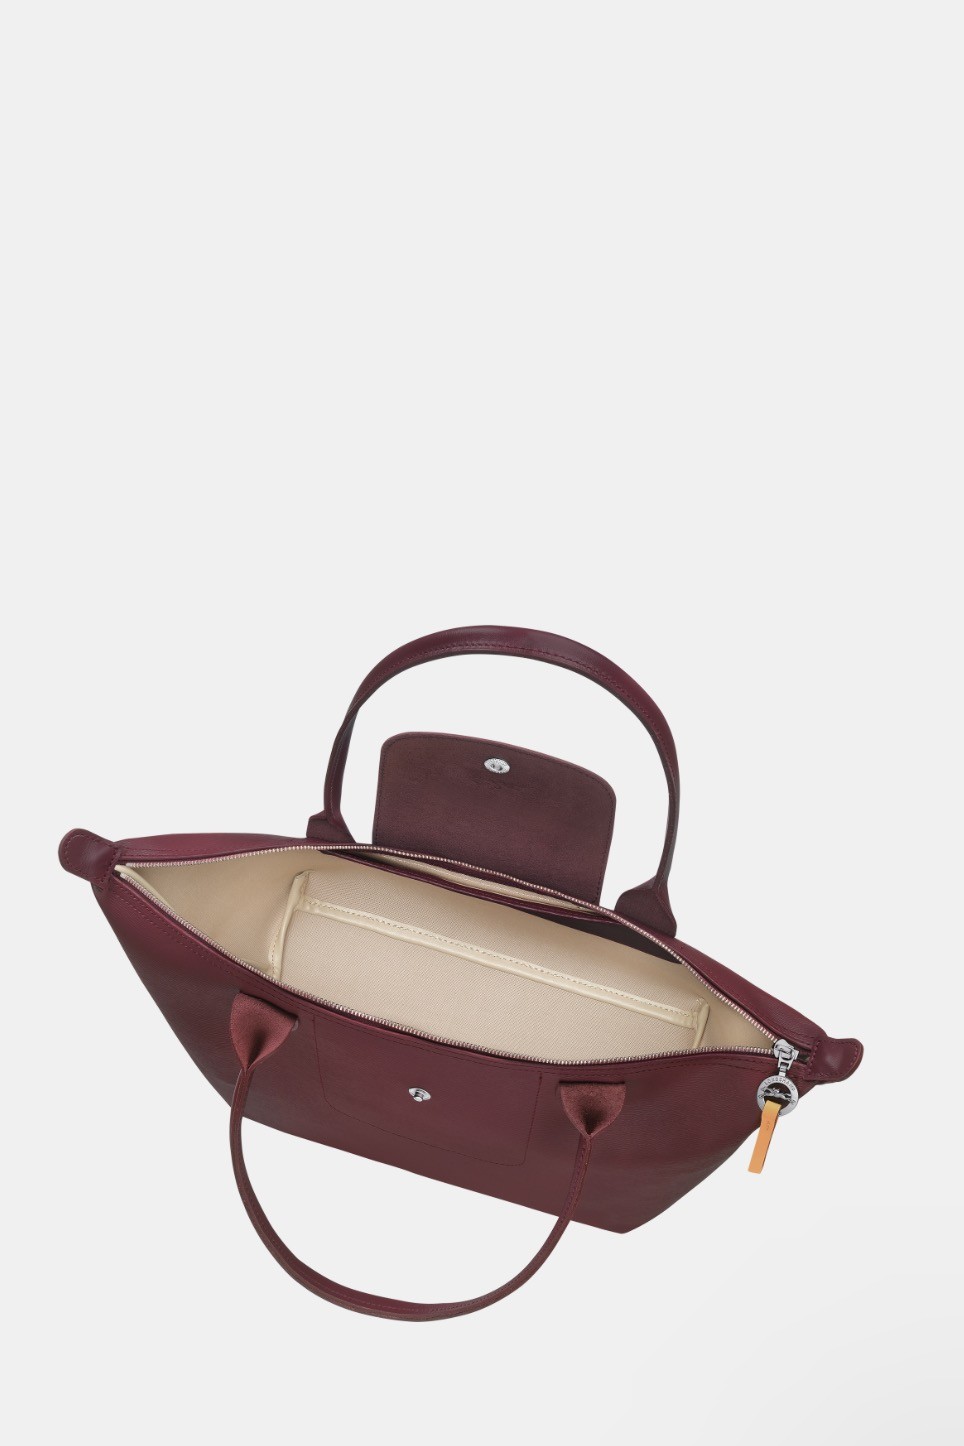 Longchamp Le Pliage Neo Medium Nylon Backpack Plum With Matching